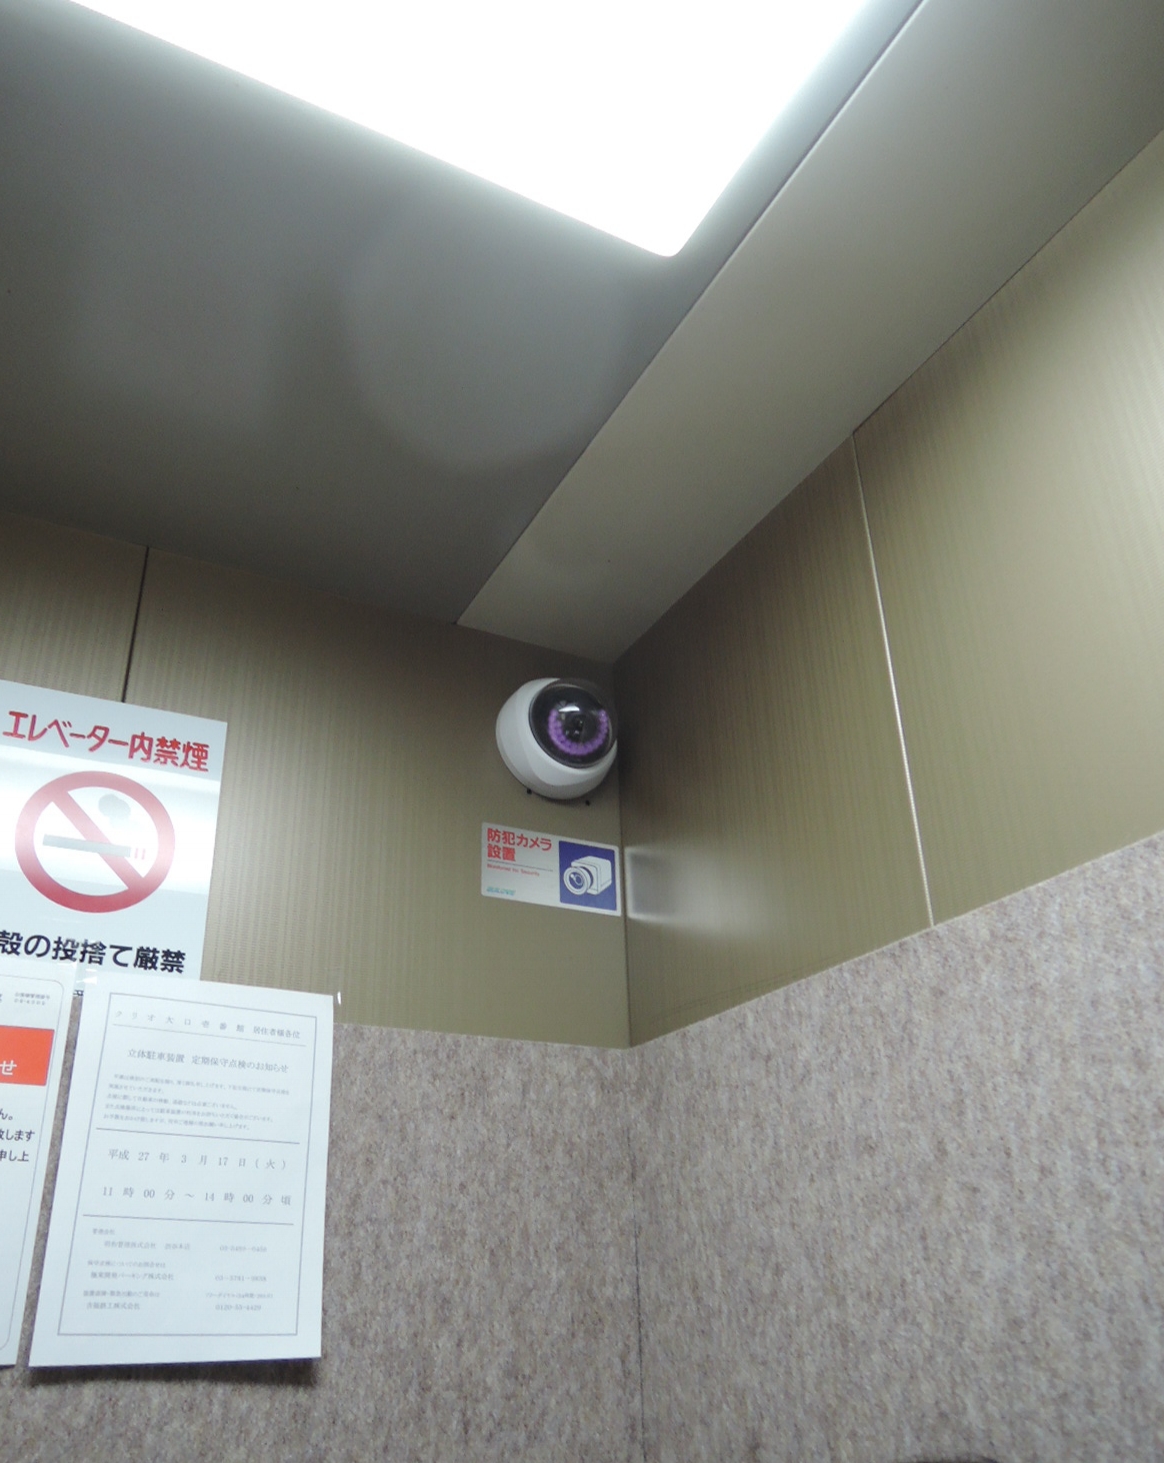 エレベーター内にも防犯カメラ設置